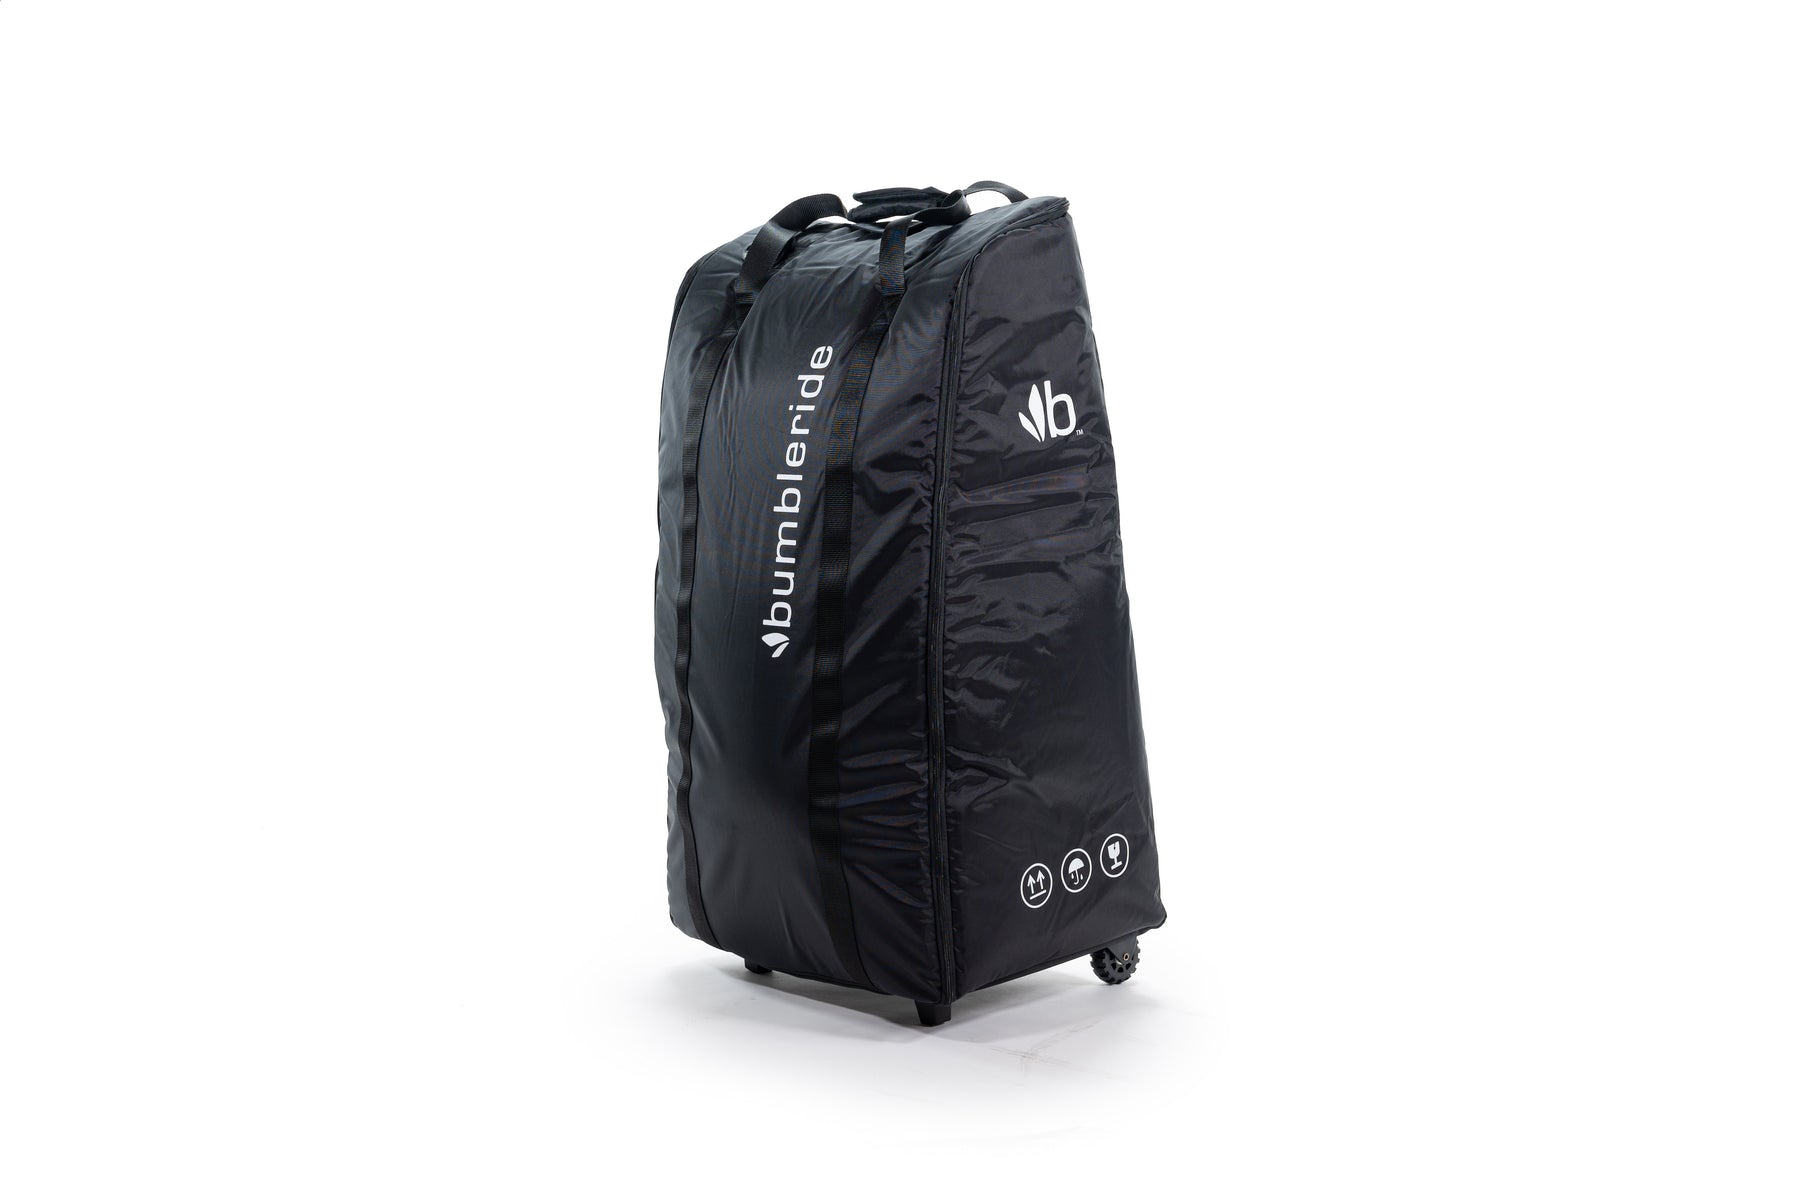 G5 Stroller Travel Bag – Orbit Baby